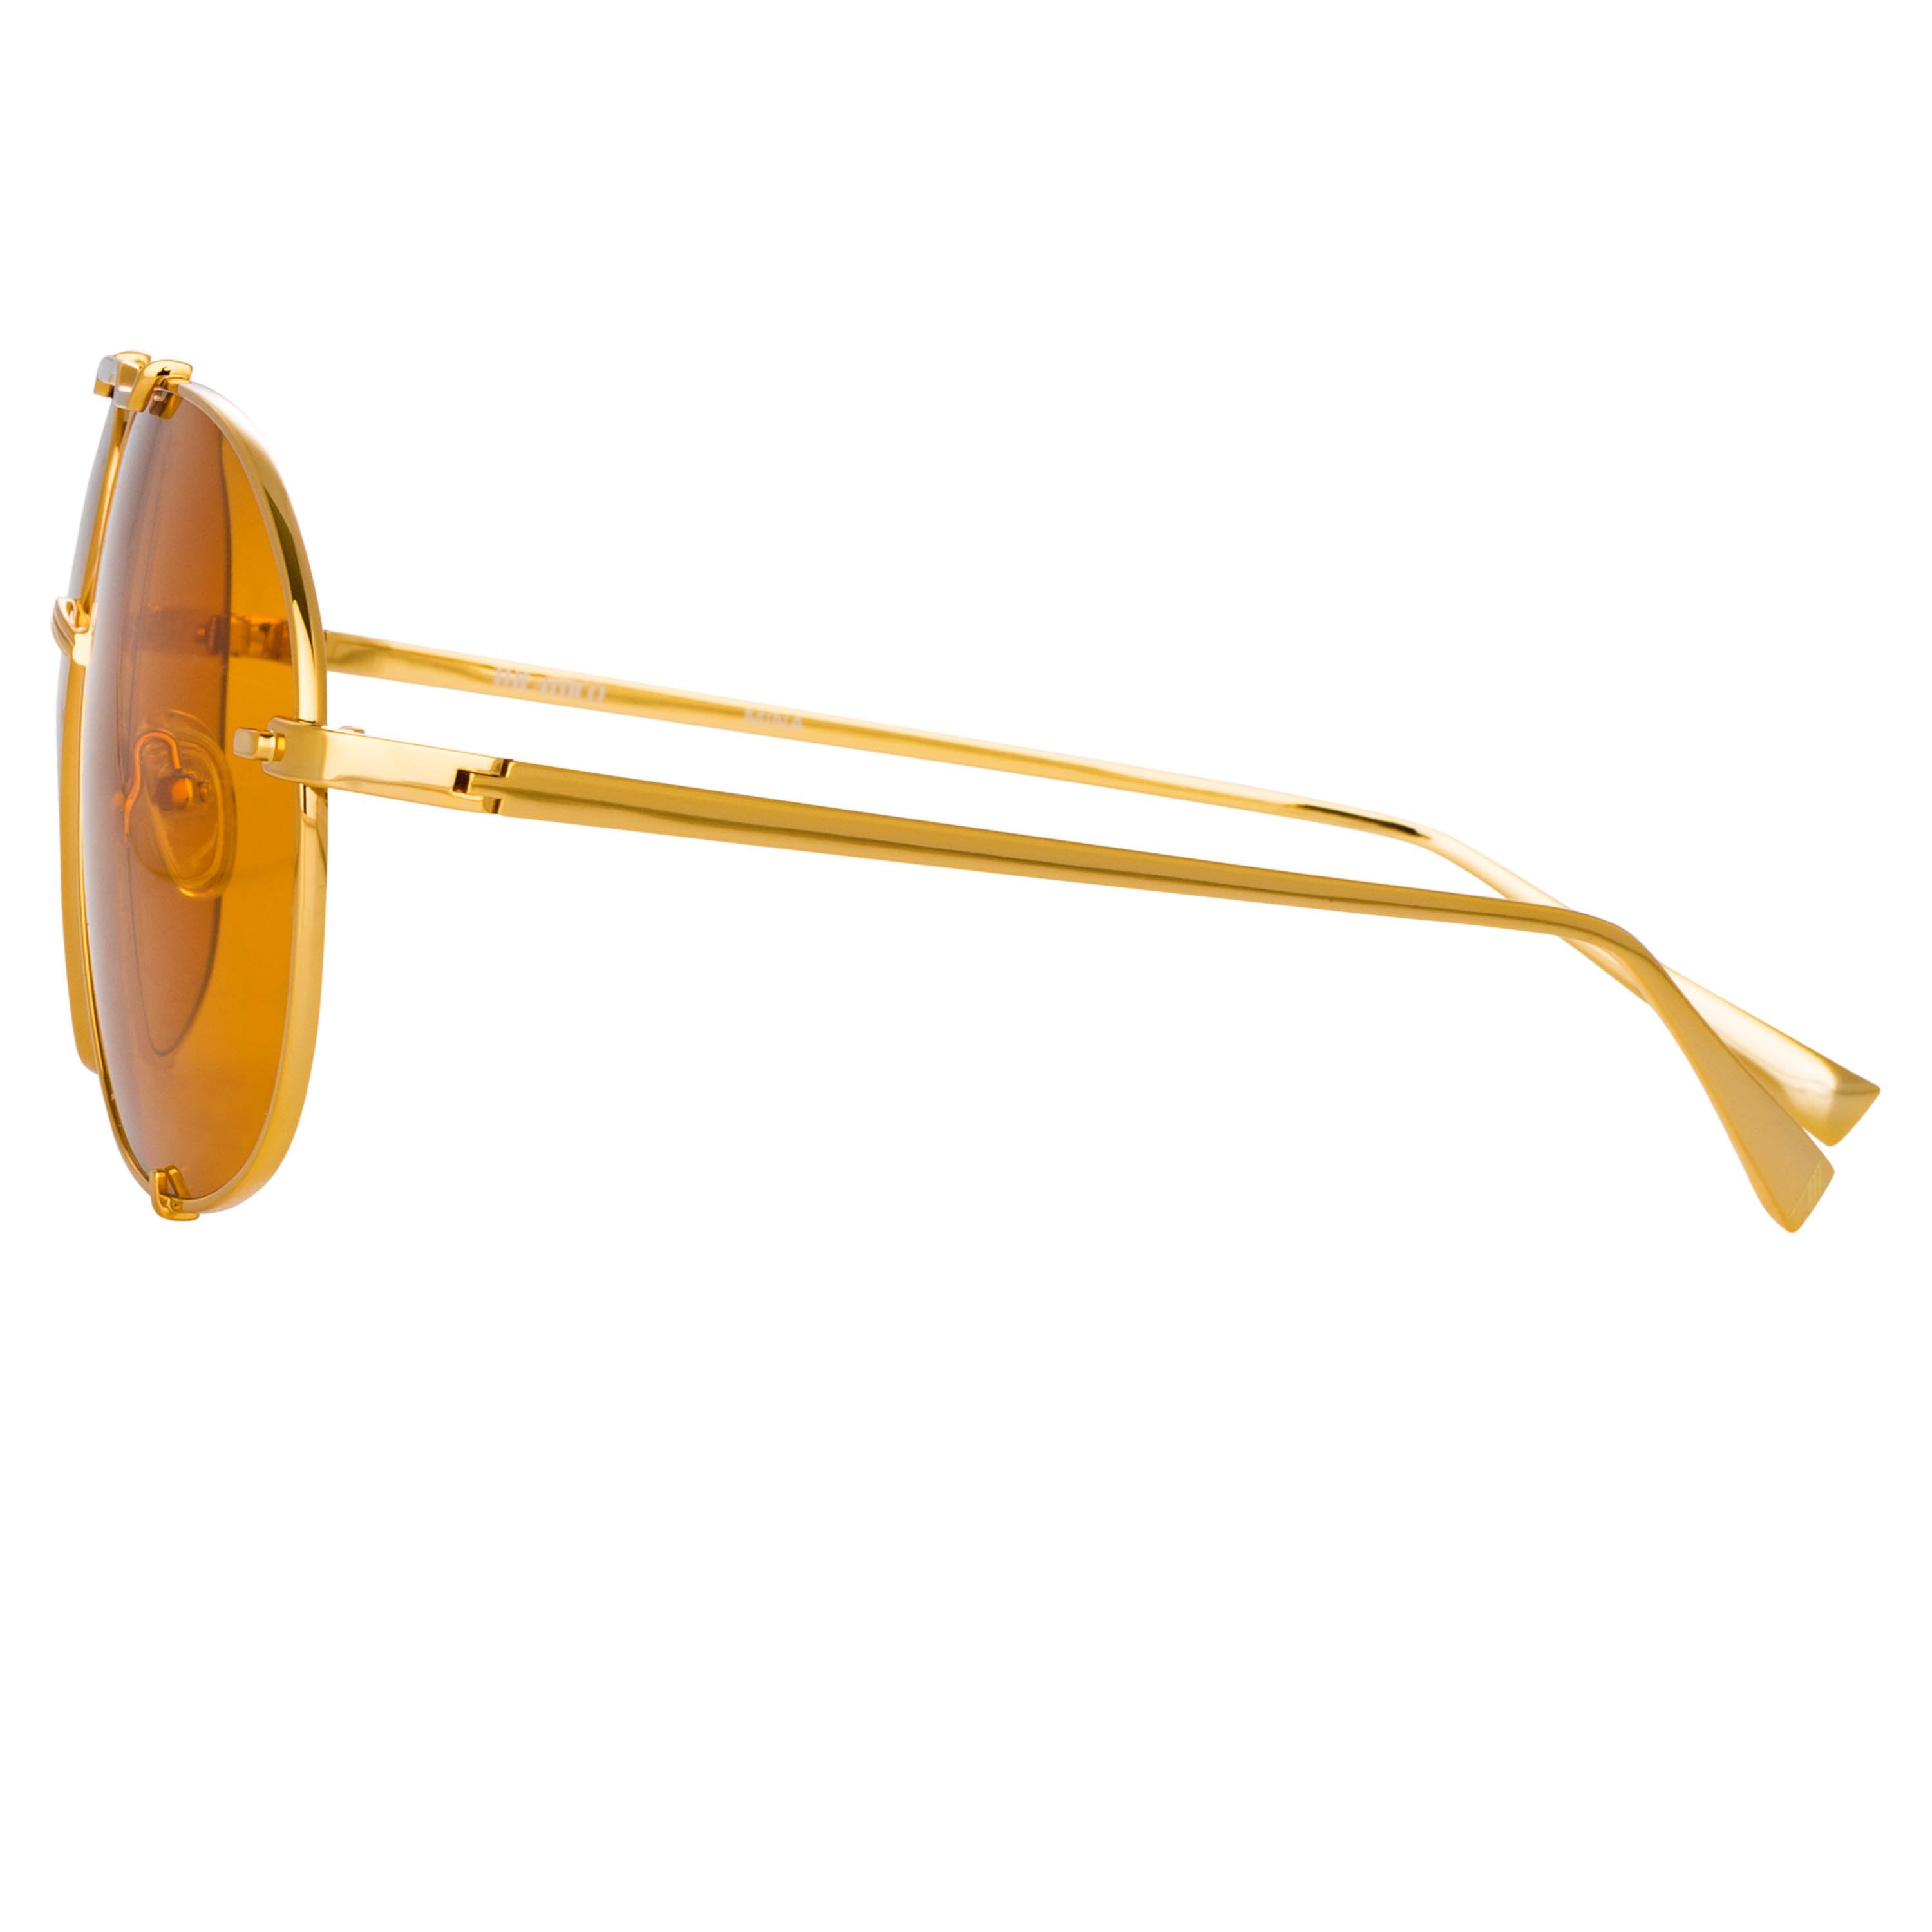 Color_ATTICO13C2SUN - The Attico Mina Oversized Sunglasses in Yellow Gold and Orange